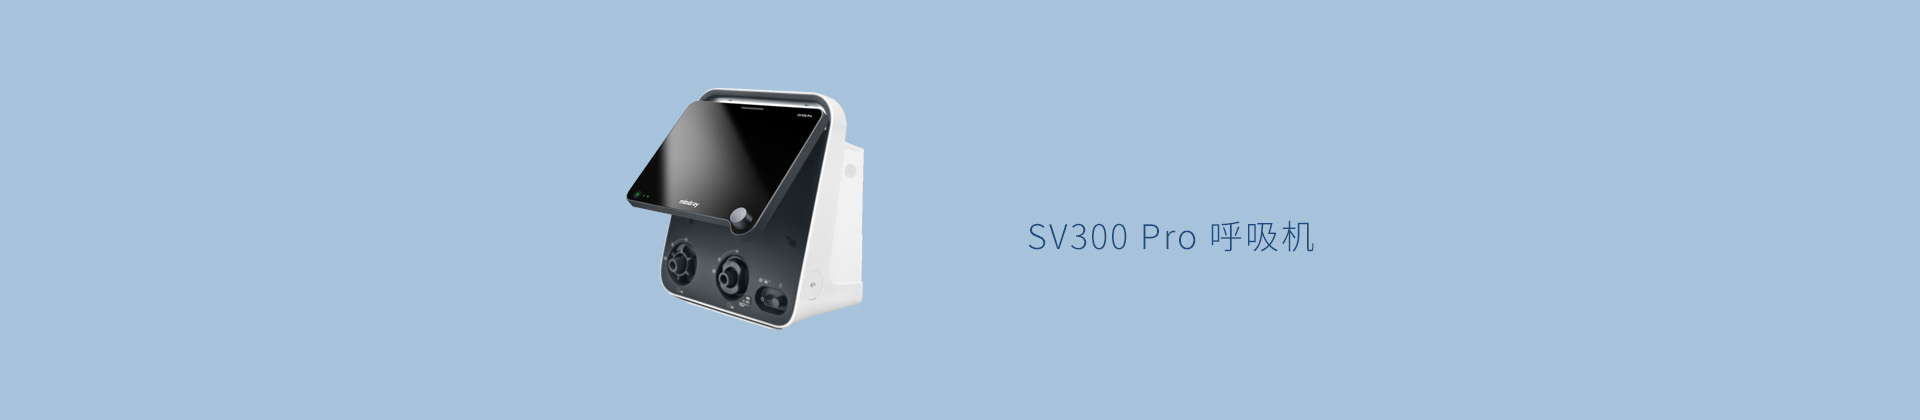 SV300 Pro 呼吸机